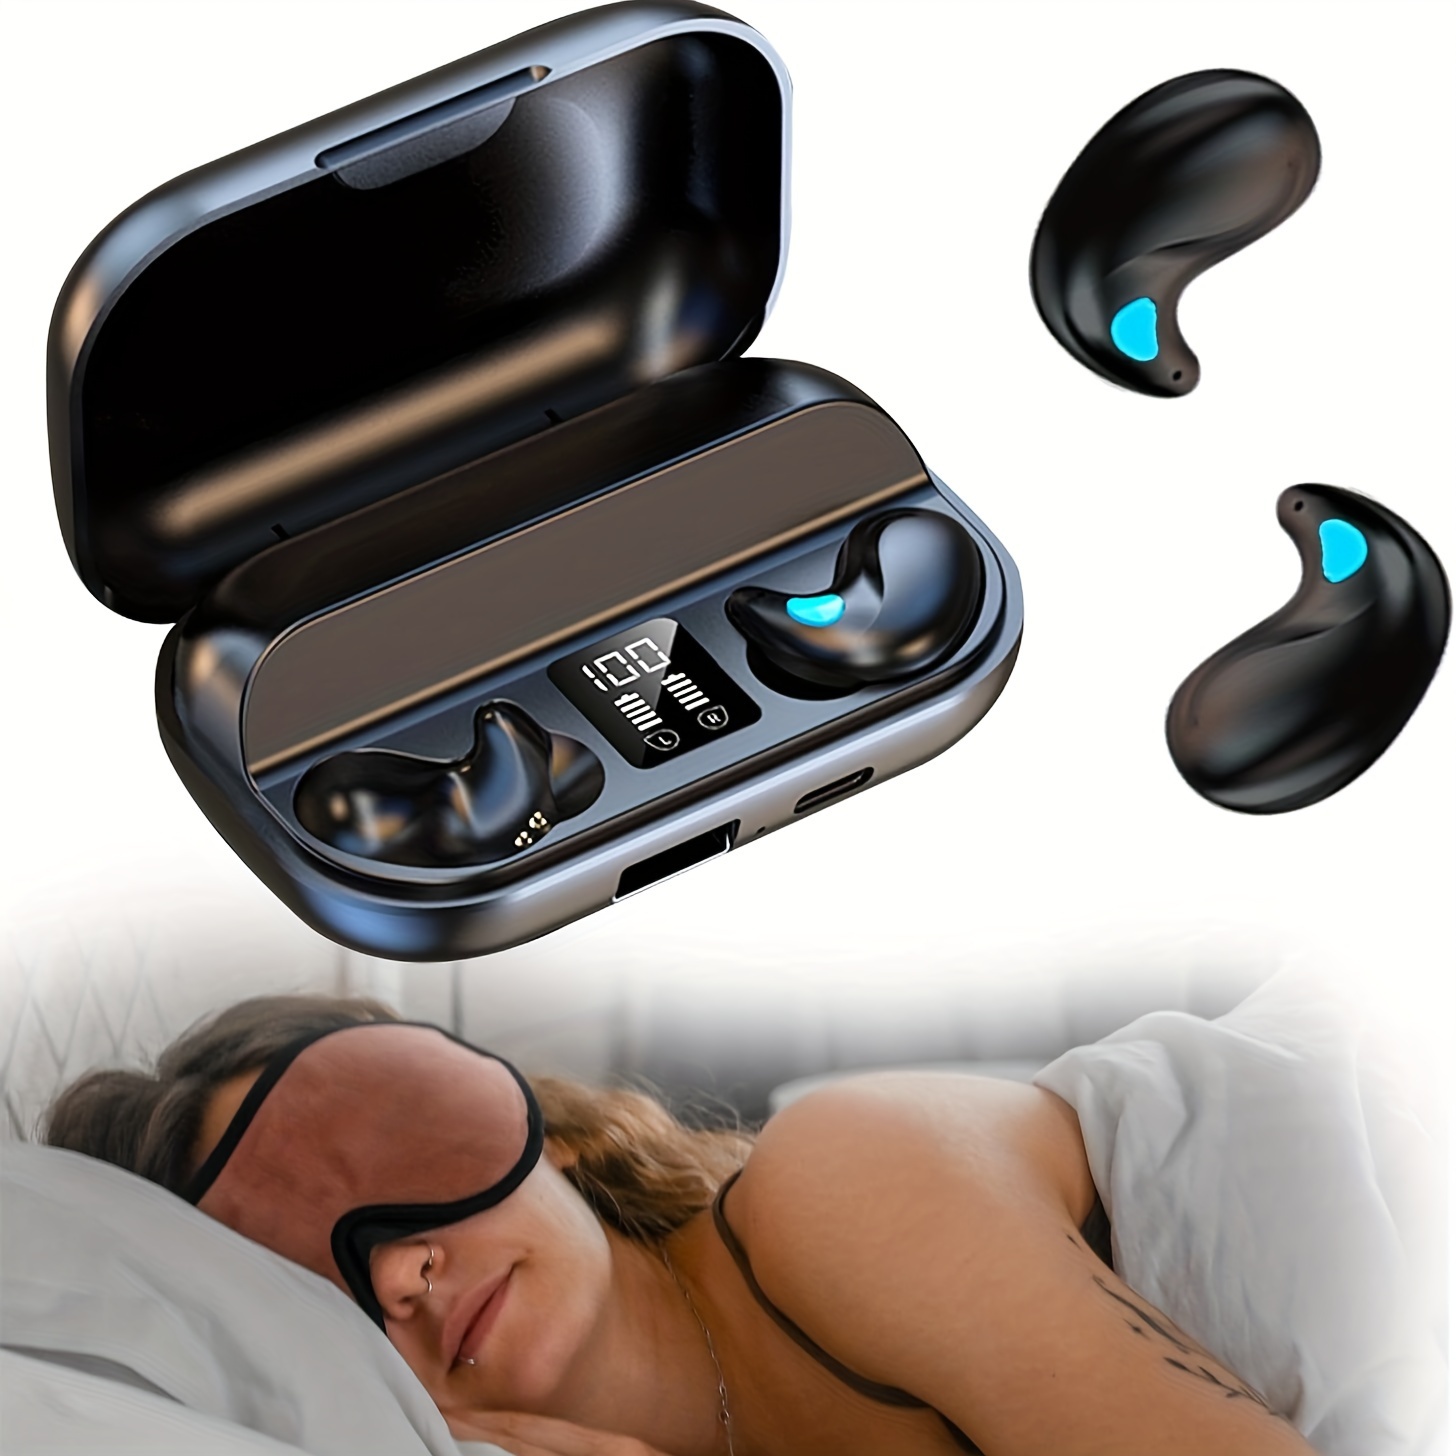 Auriculares invisibles pequeños pequeños ocultos para trabajar, dormir,  música (nude)